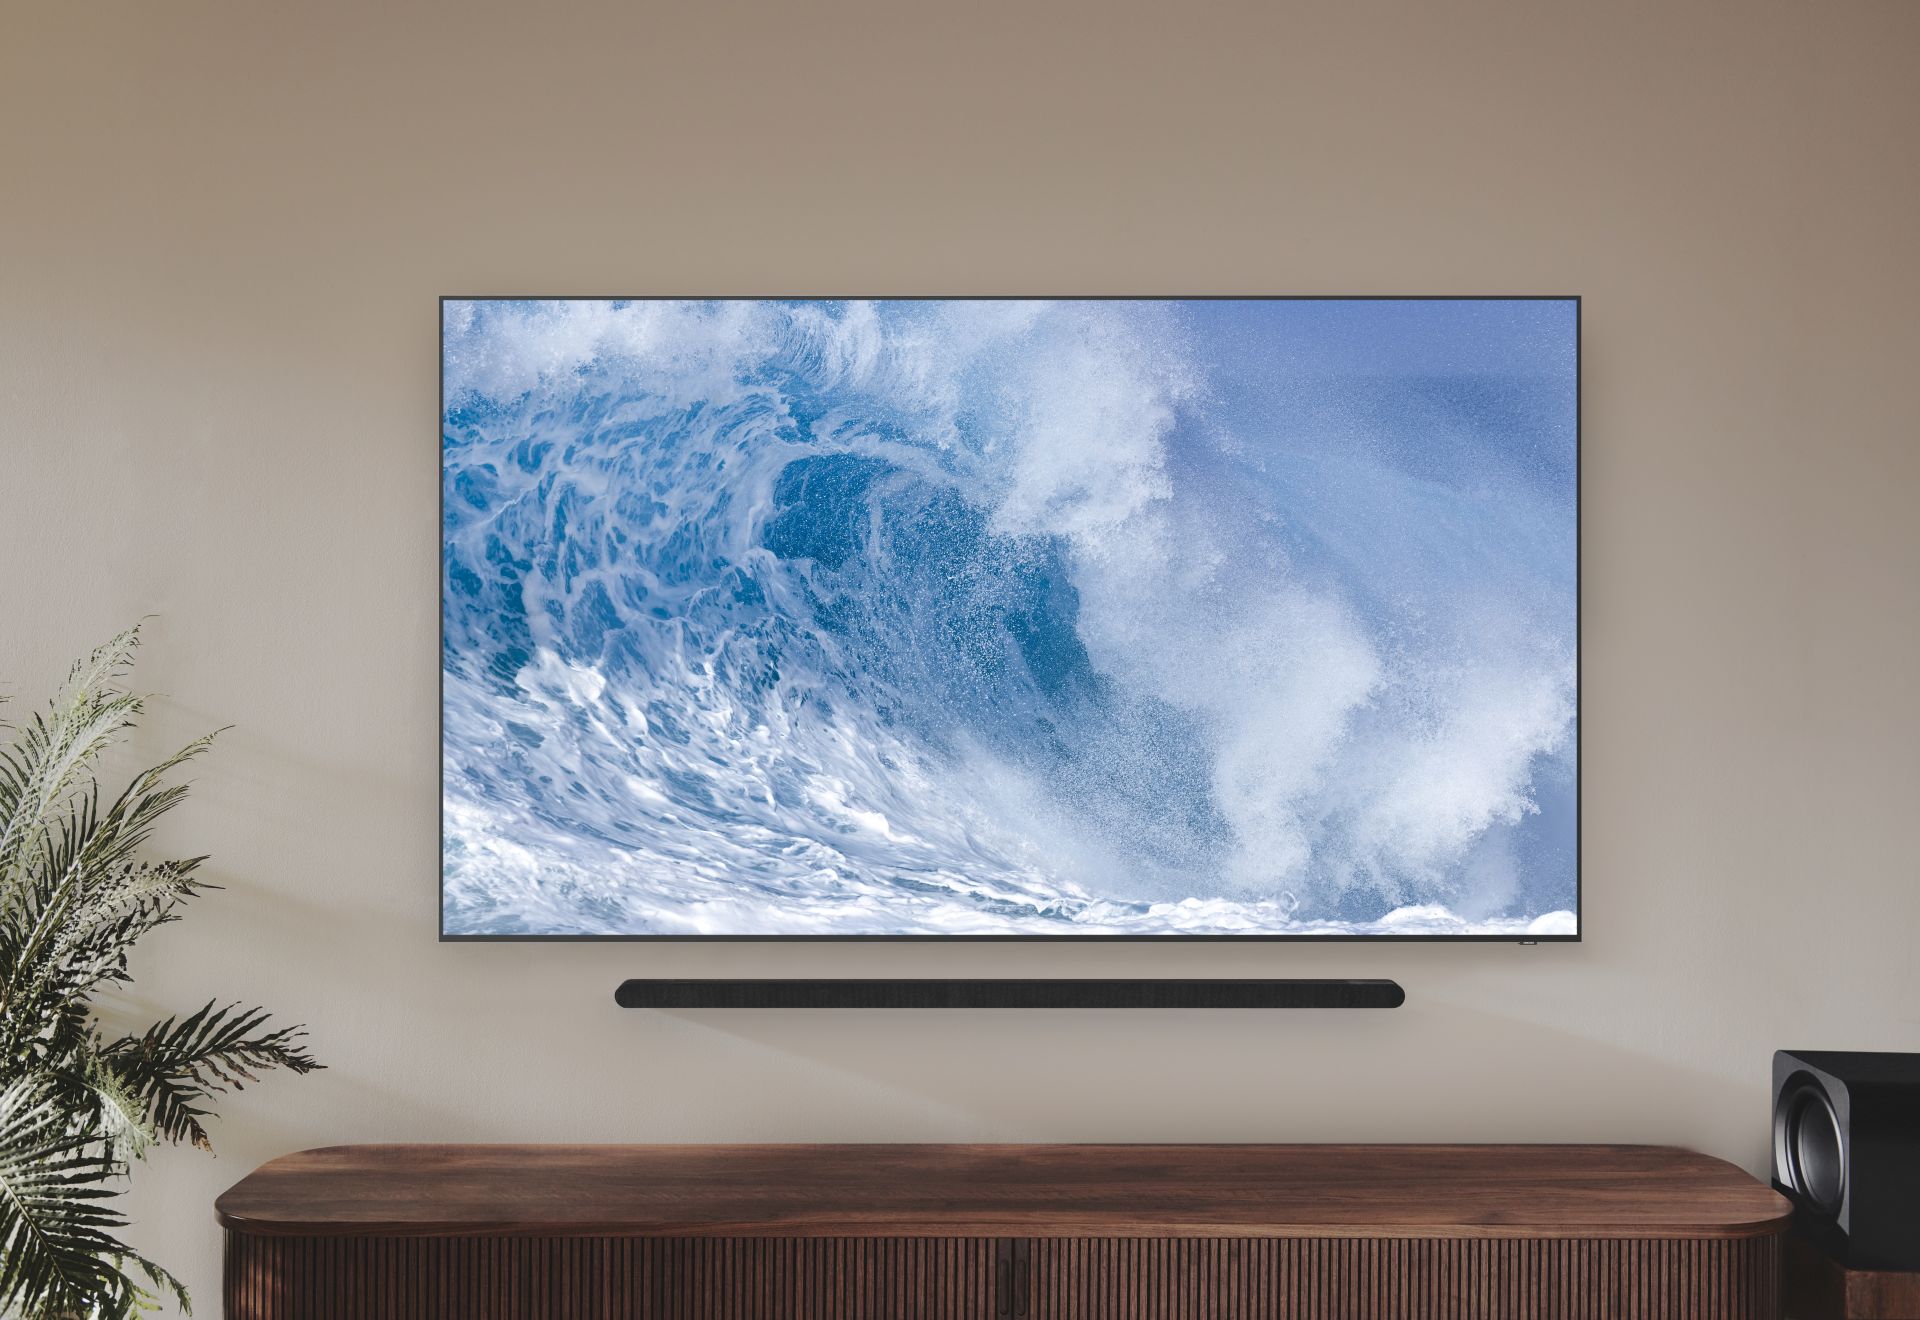 Kup wybrany telewizor Samsung, dobierz soundbar i uzyskaj do 2 tys. złotych rabatu